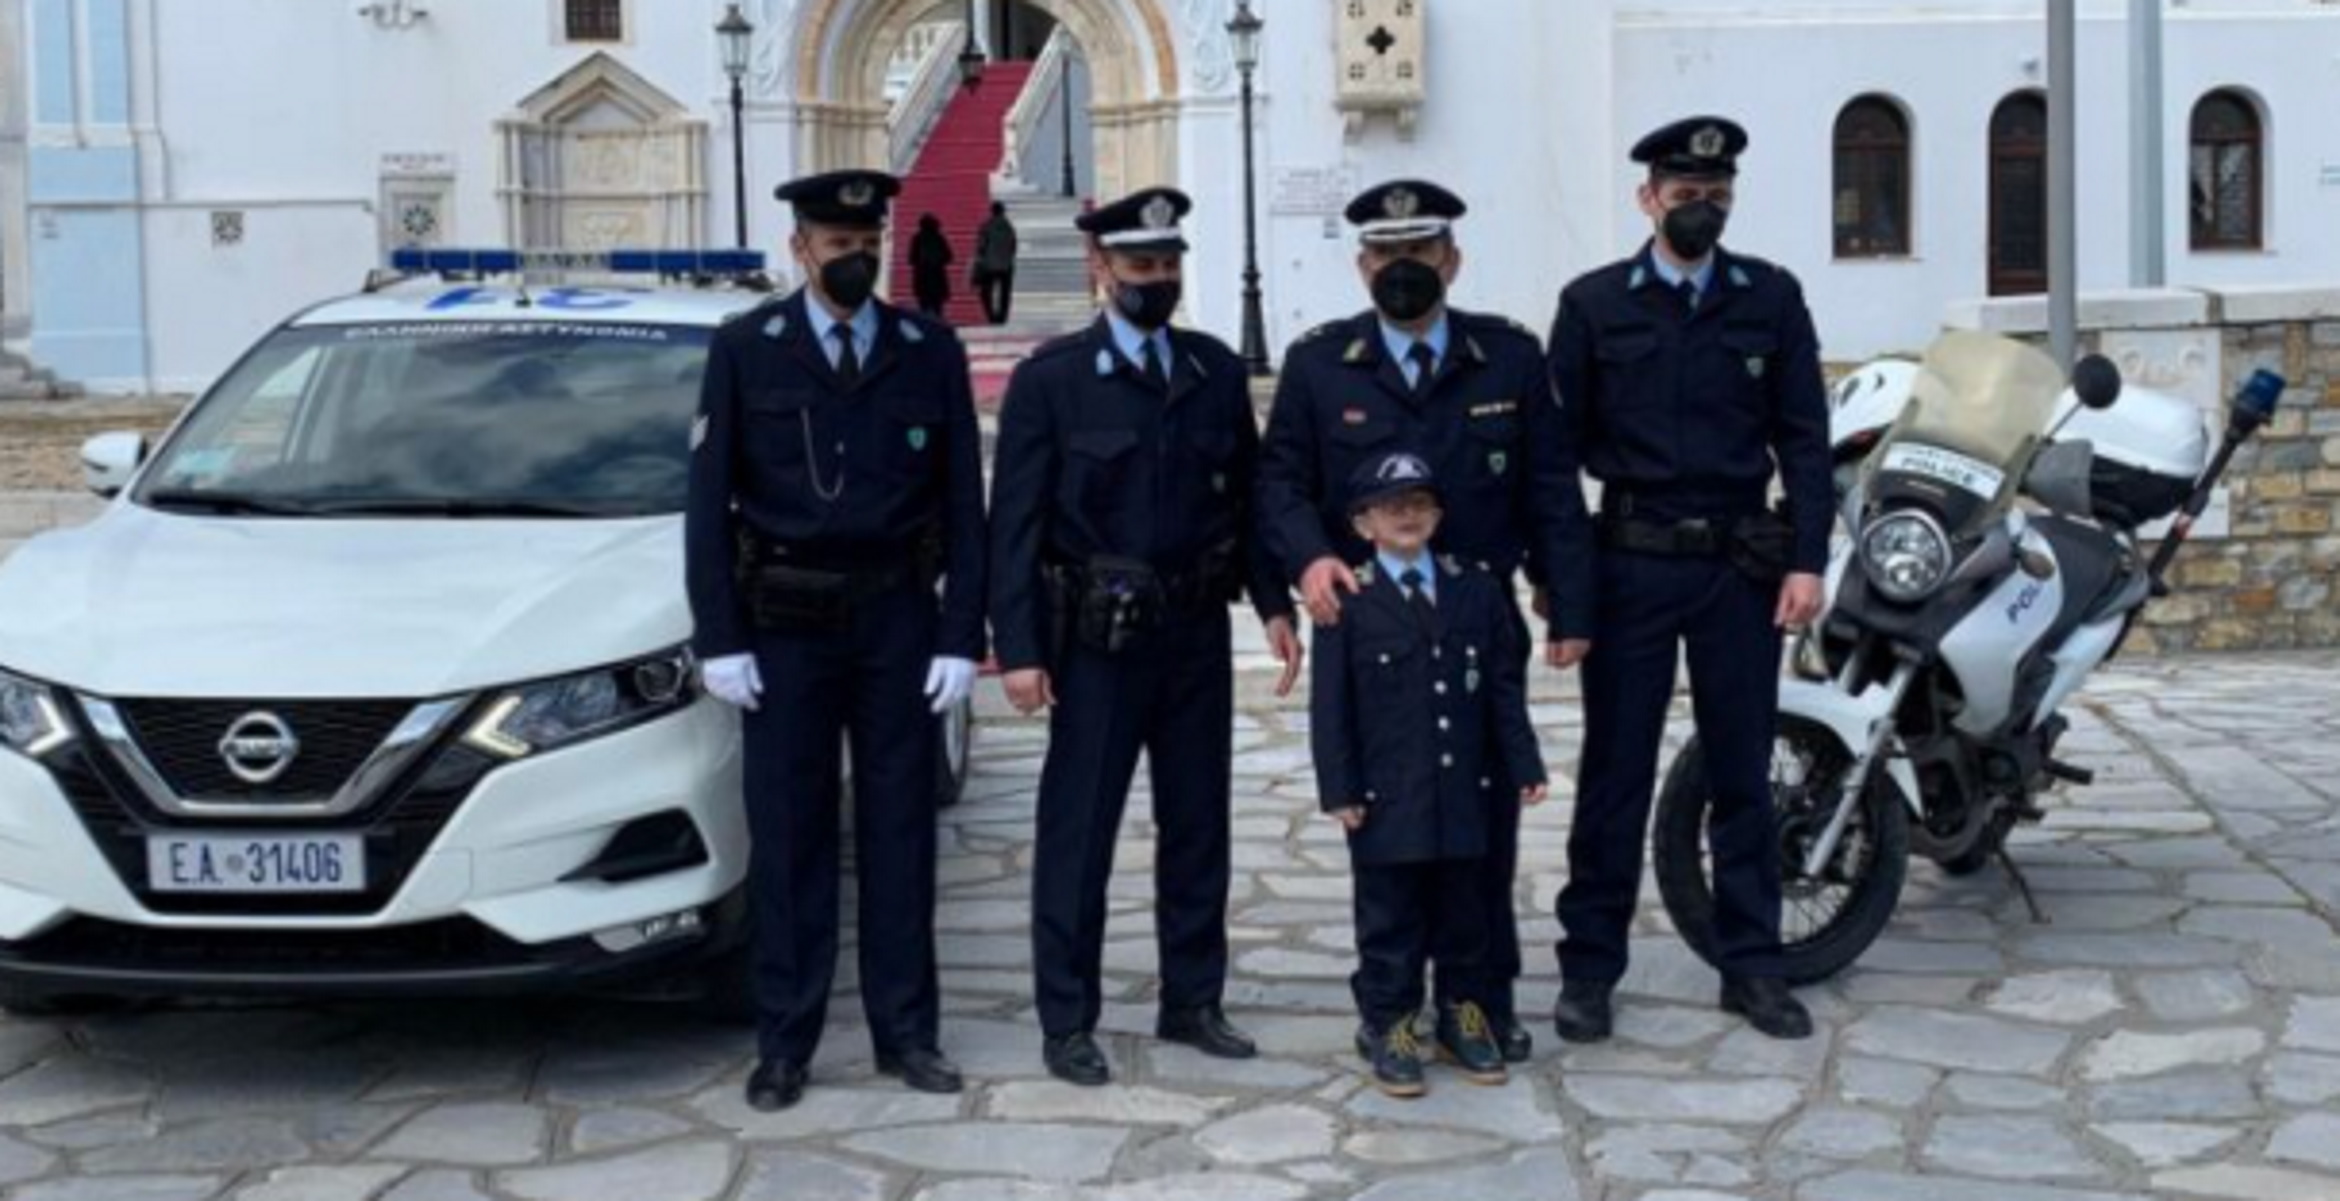 Τήνος: 6χρονος έγινε για λίγο αστυνομικός – Η έκπληξη στα γενέθλια, οι ευχές και τα χαμόγελα